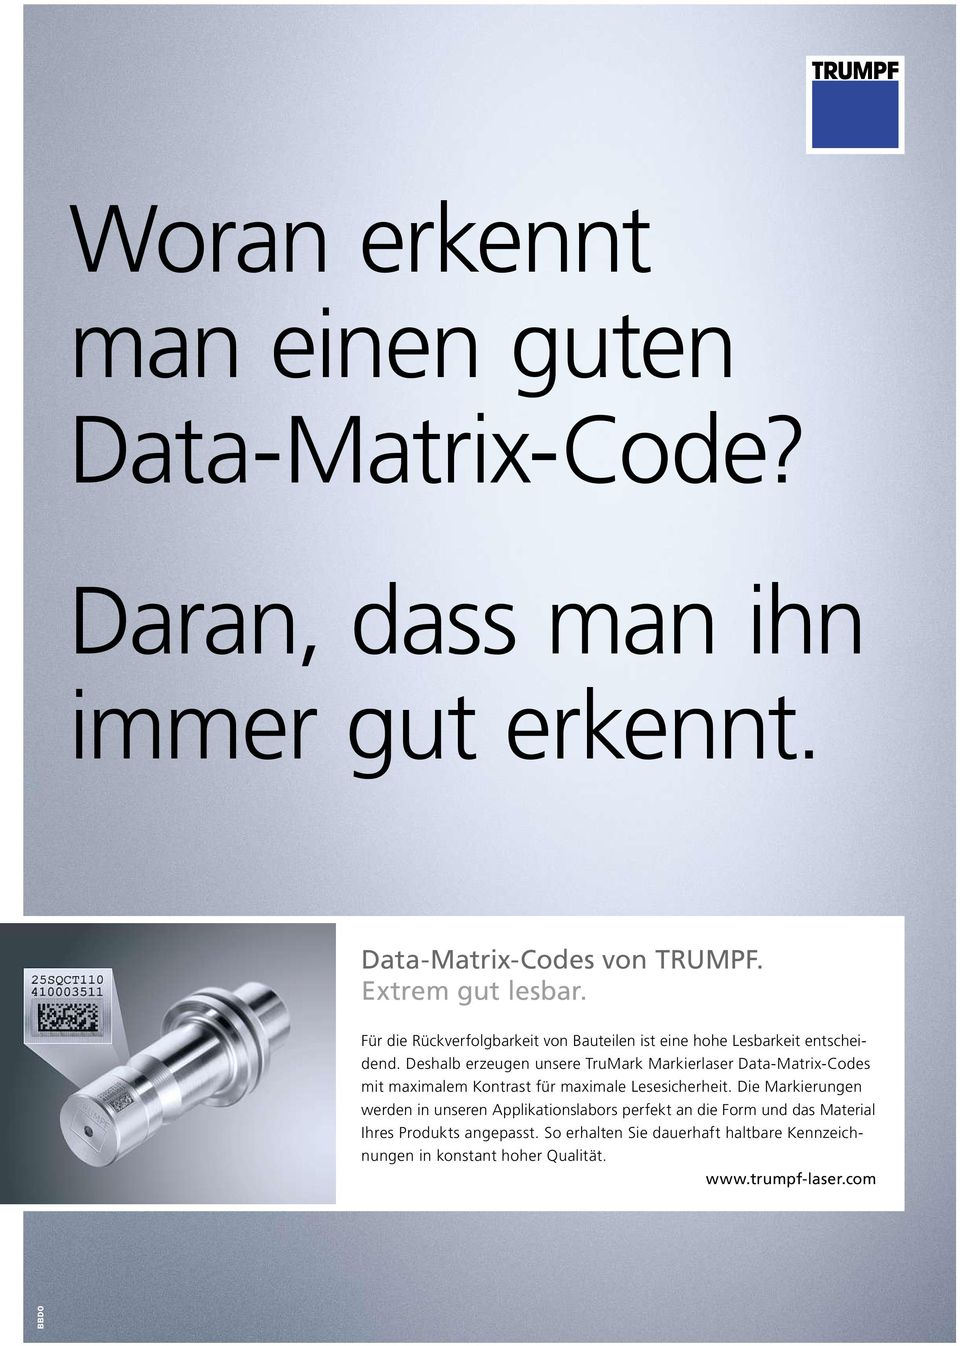 Deshalb erzeugen unsere TruMark Markierlaser Data-Matrix-Codes mit maximalem Kontrast für maximale Lesesicherheit.